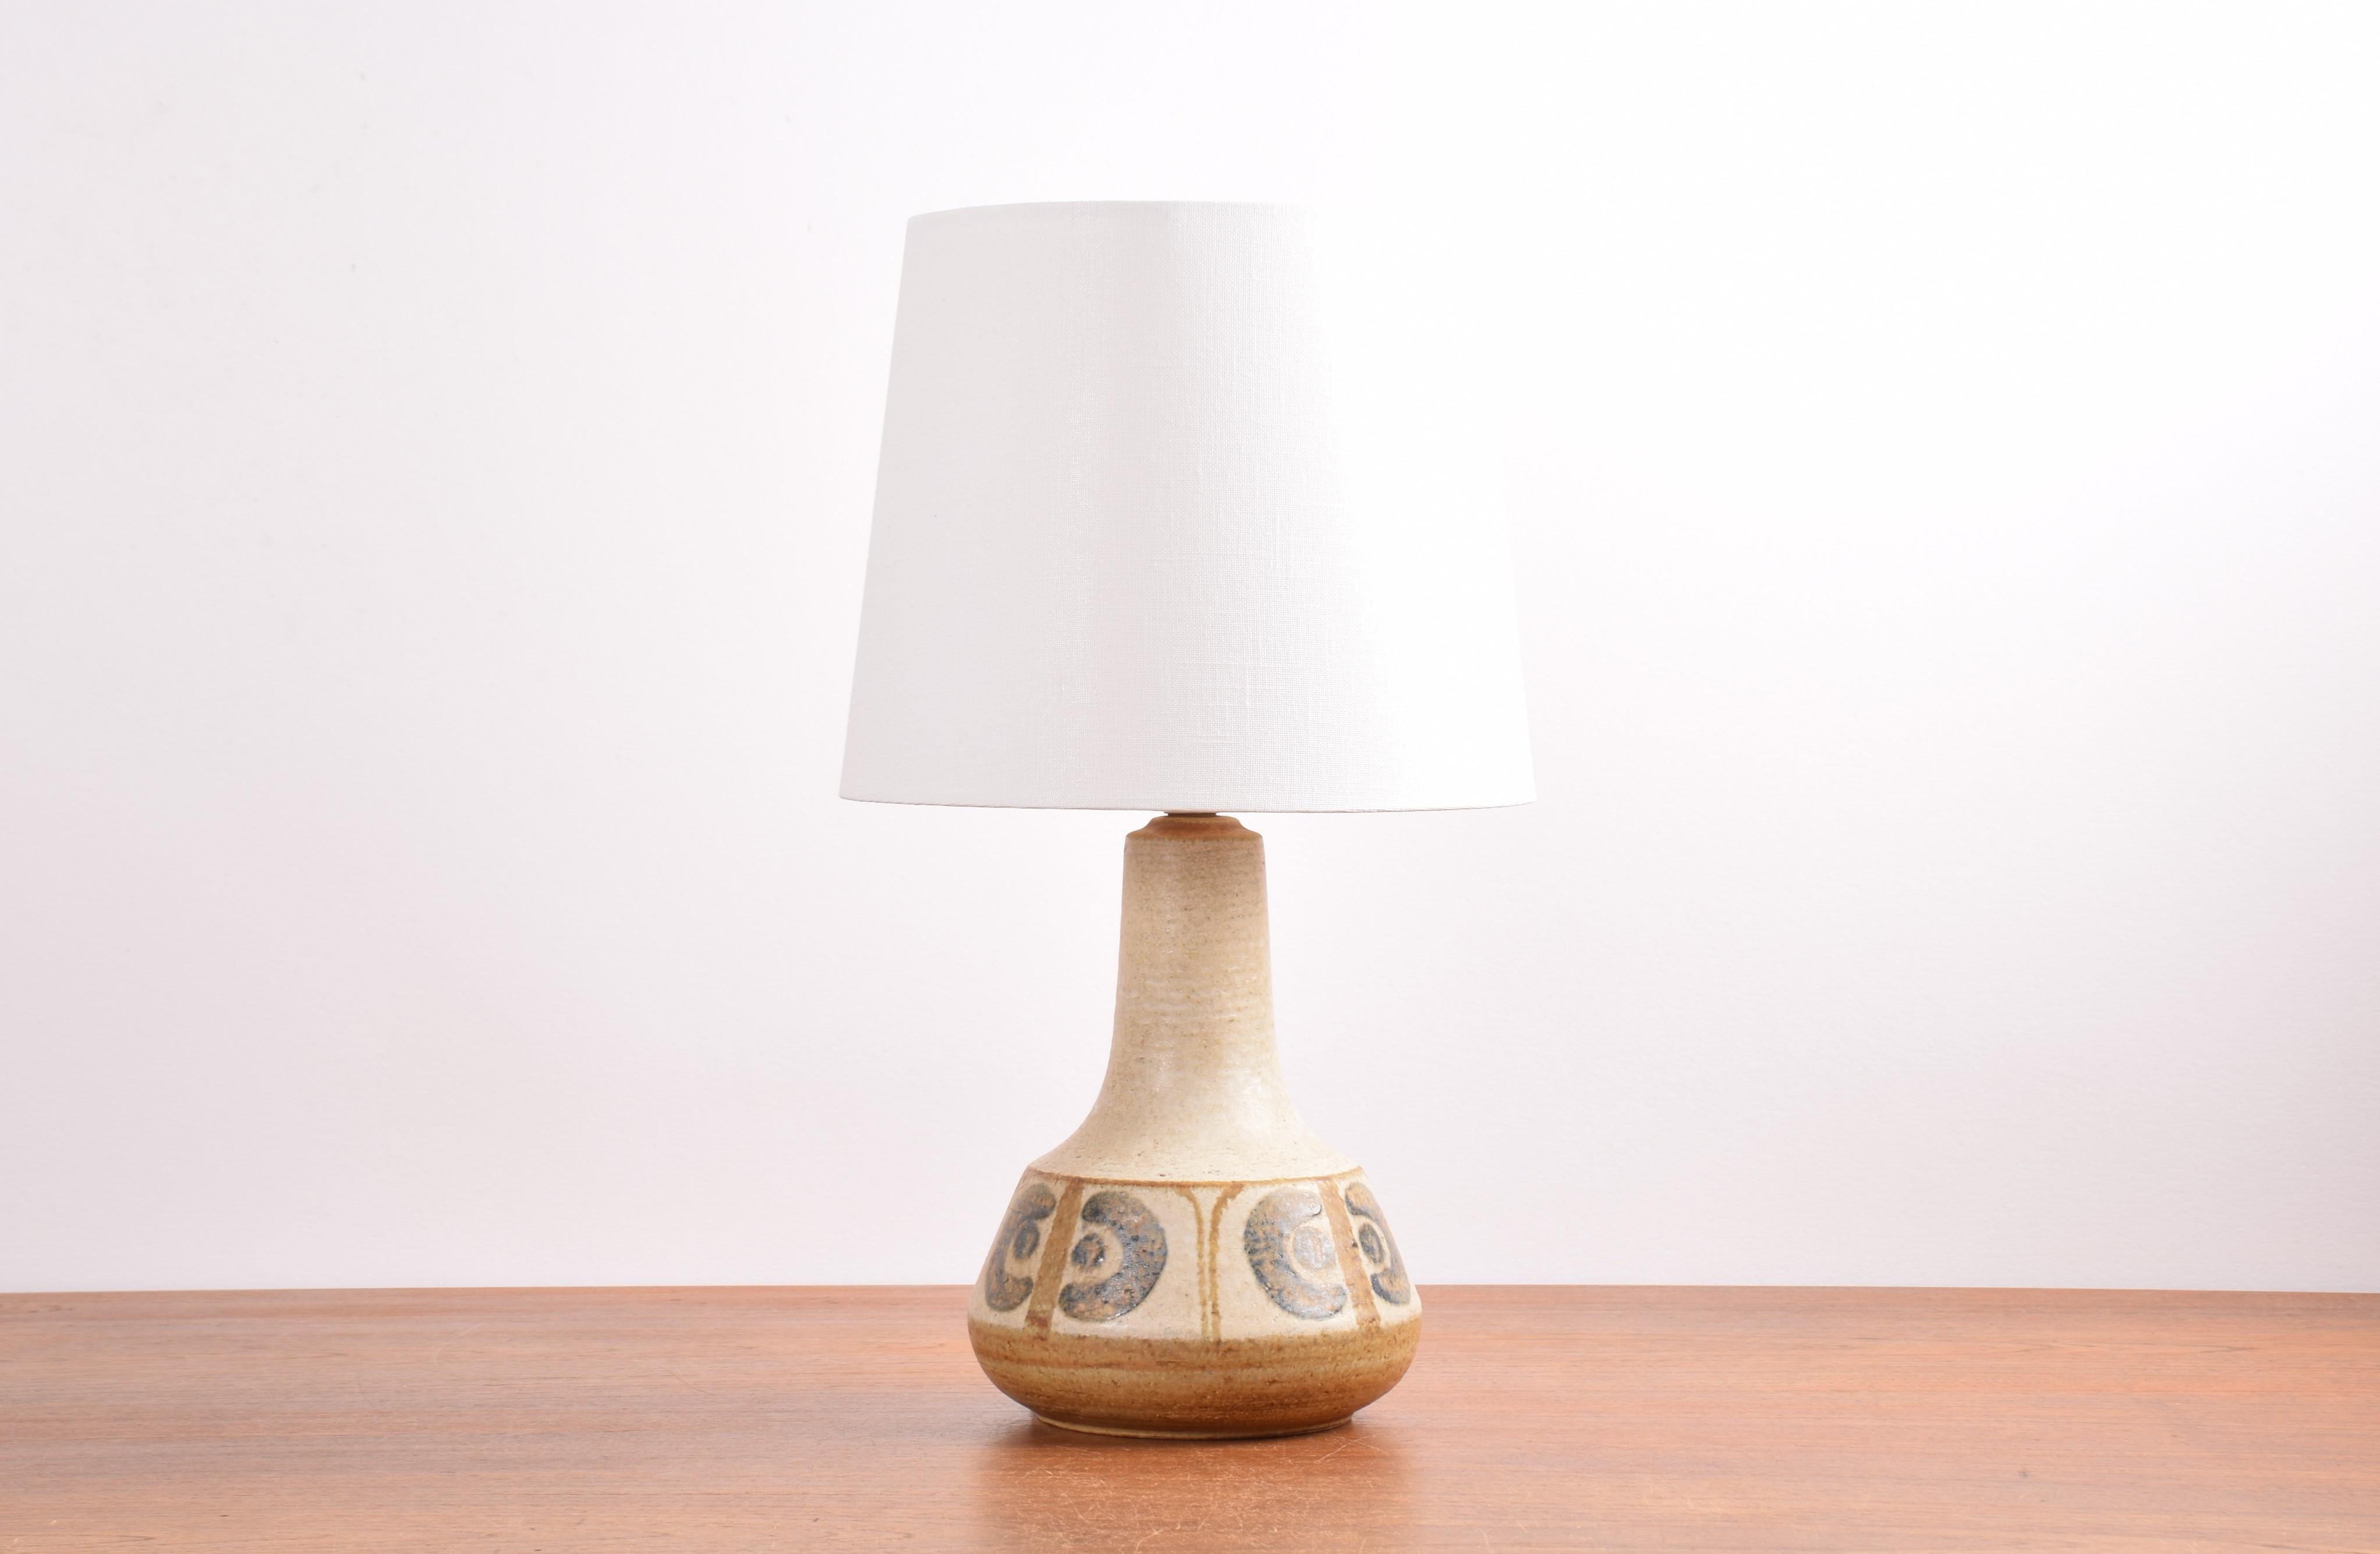 Lampe de table danoise du milieu du siècle de Søholm Stentøj, Danemark, conçue par Svend Aage Jensen. Fabriqué entre les années 1960 et 1970.

La lampe est faite à la main et fabriquée en grès. Il présente un décor répété de fleurs stylisées